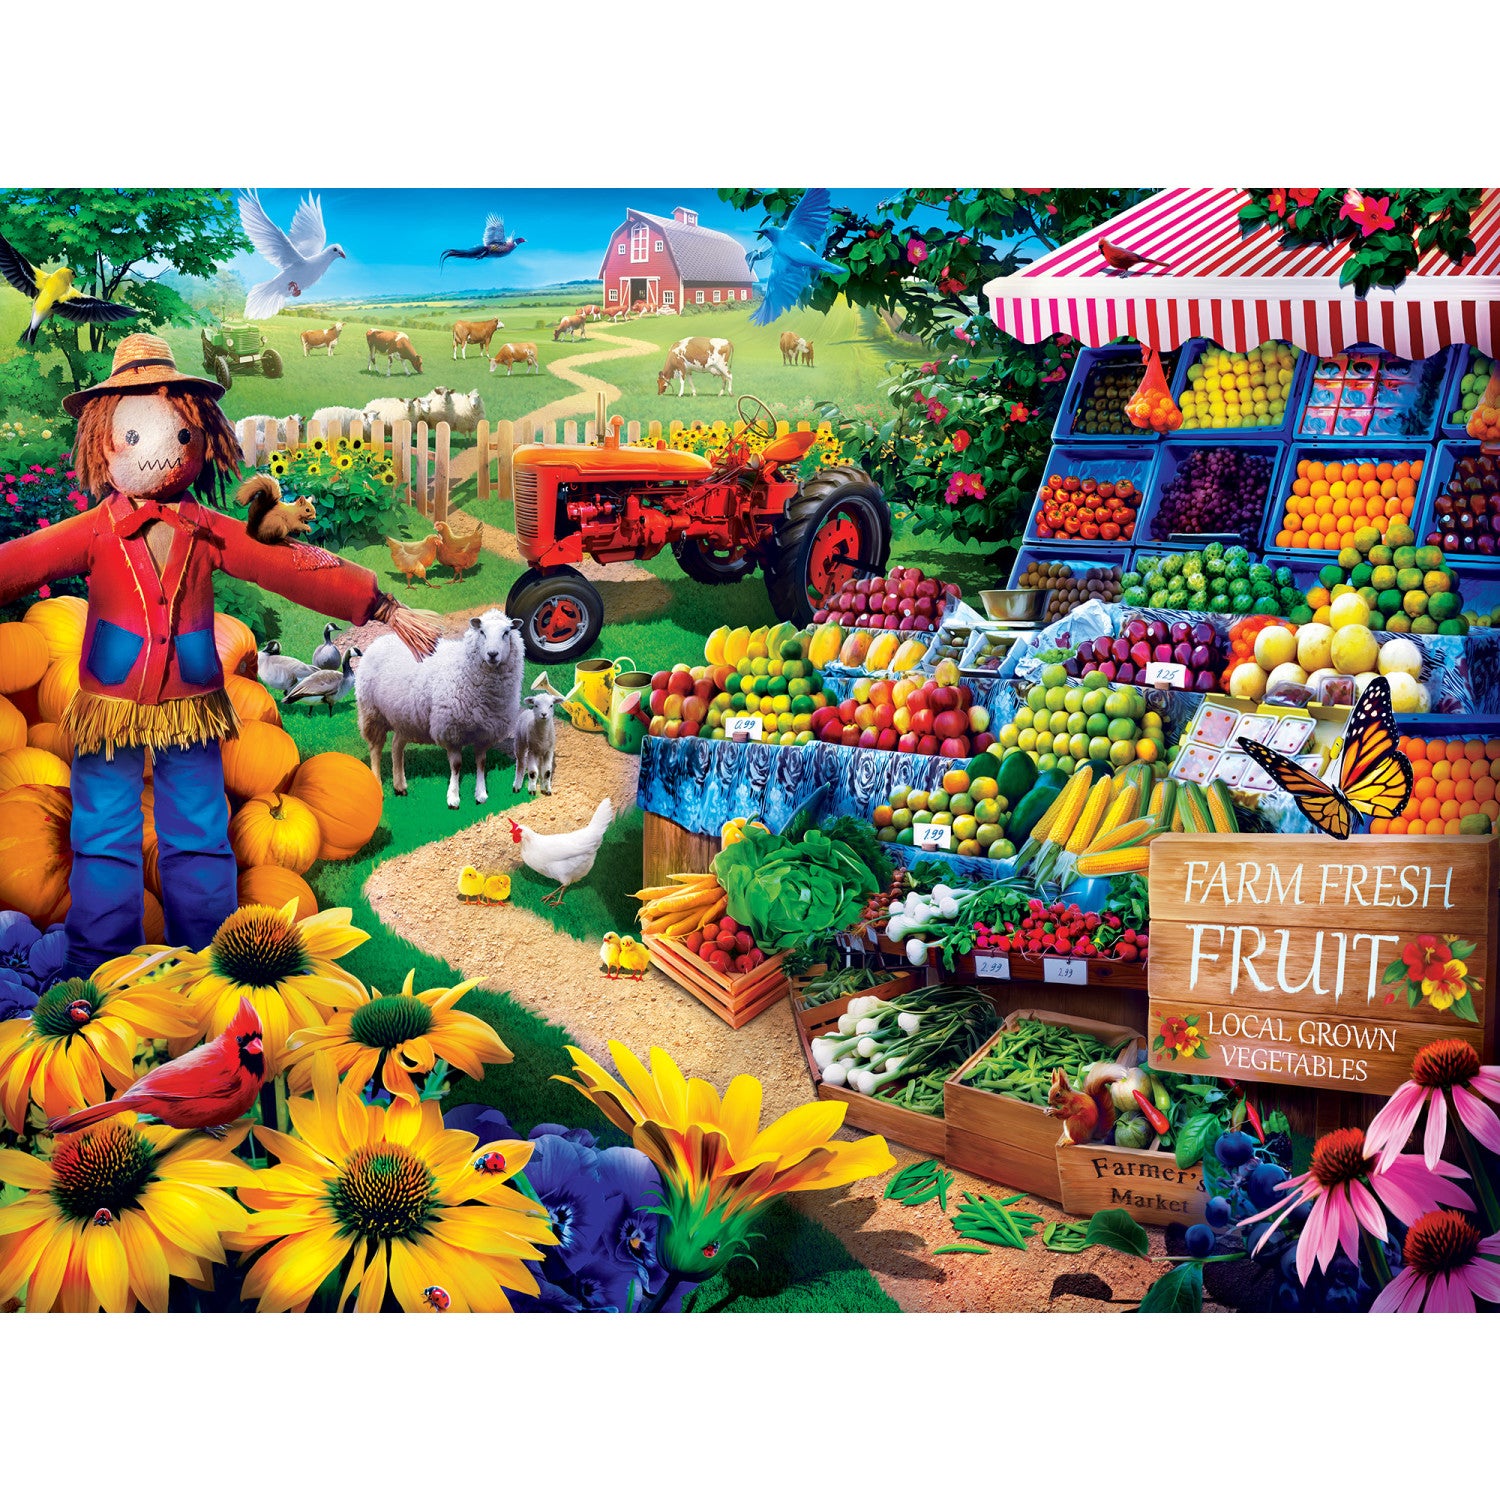 Farmer's Market - Fresh Farm Fruit 750 Piece Puzzle